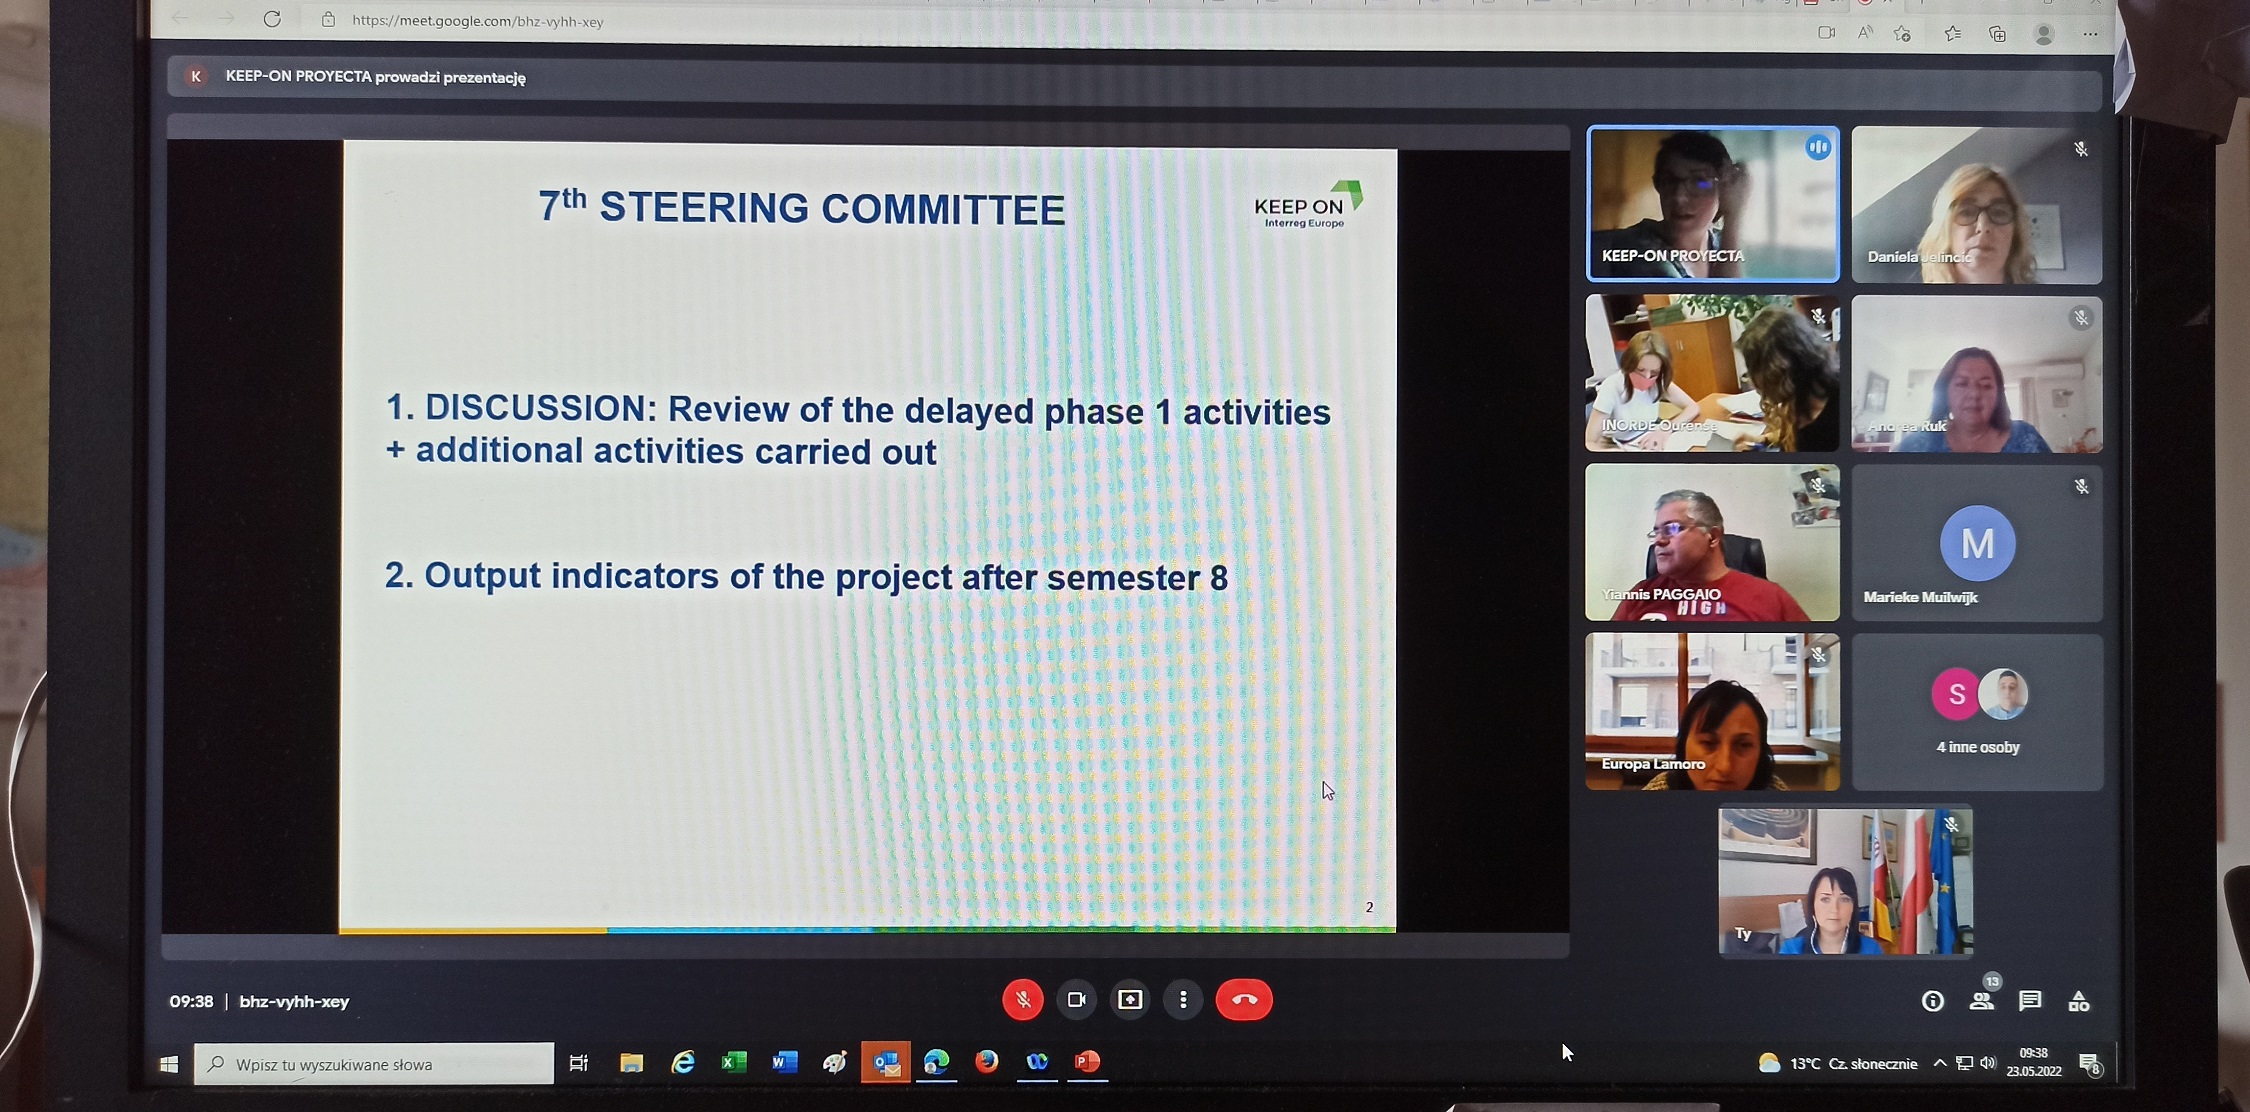 VII Meeting of the Steering Committee 